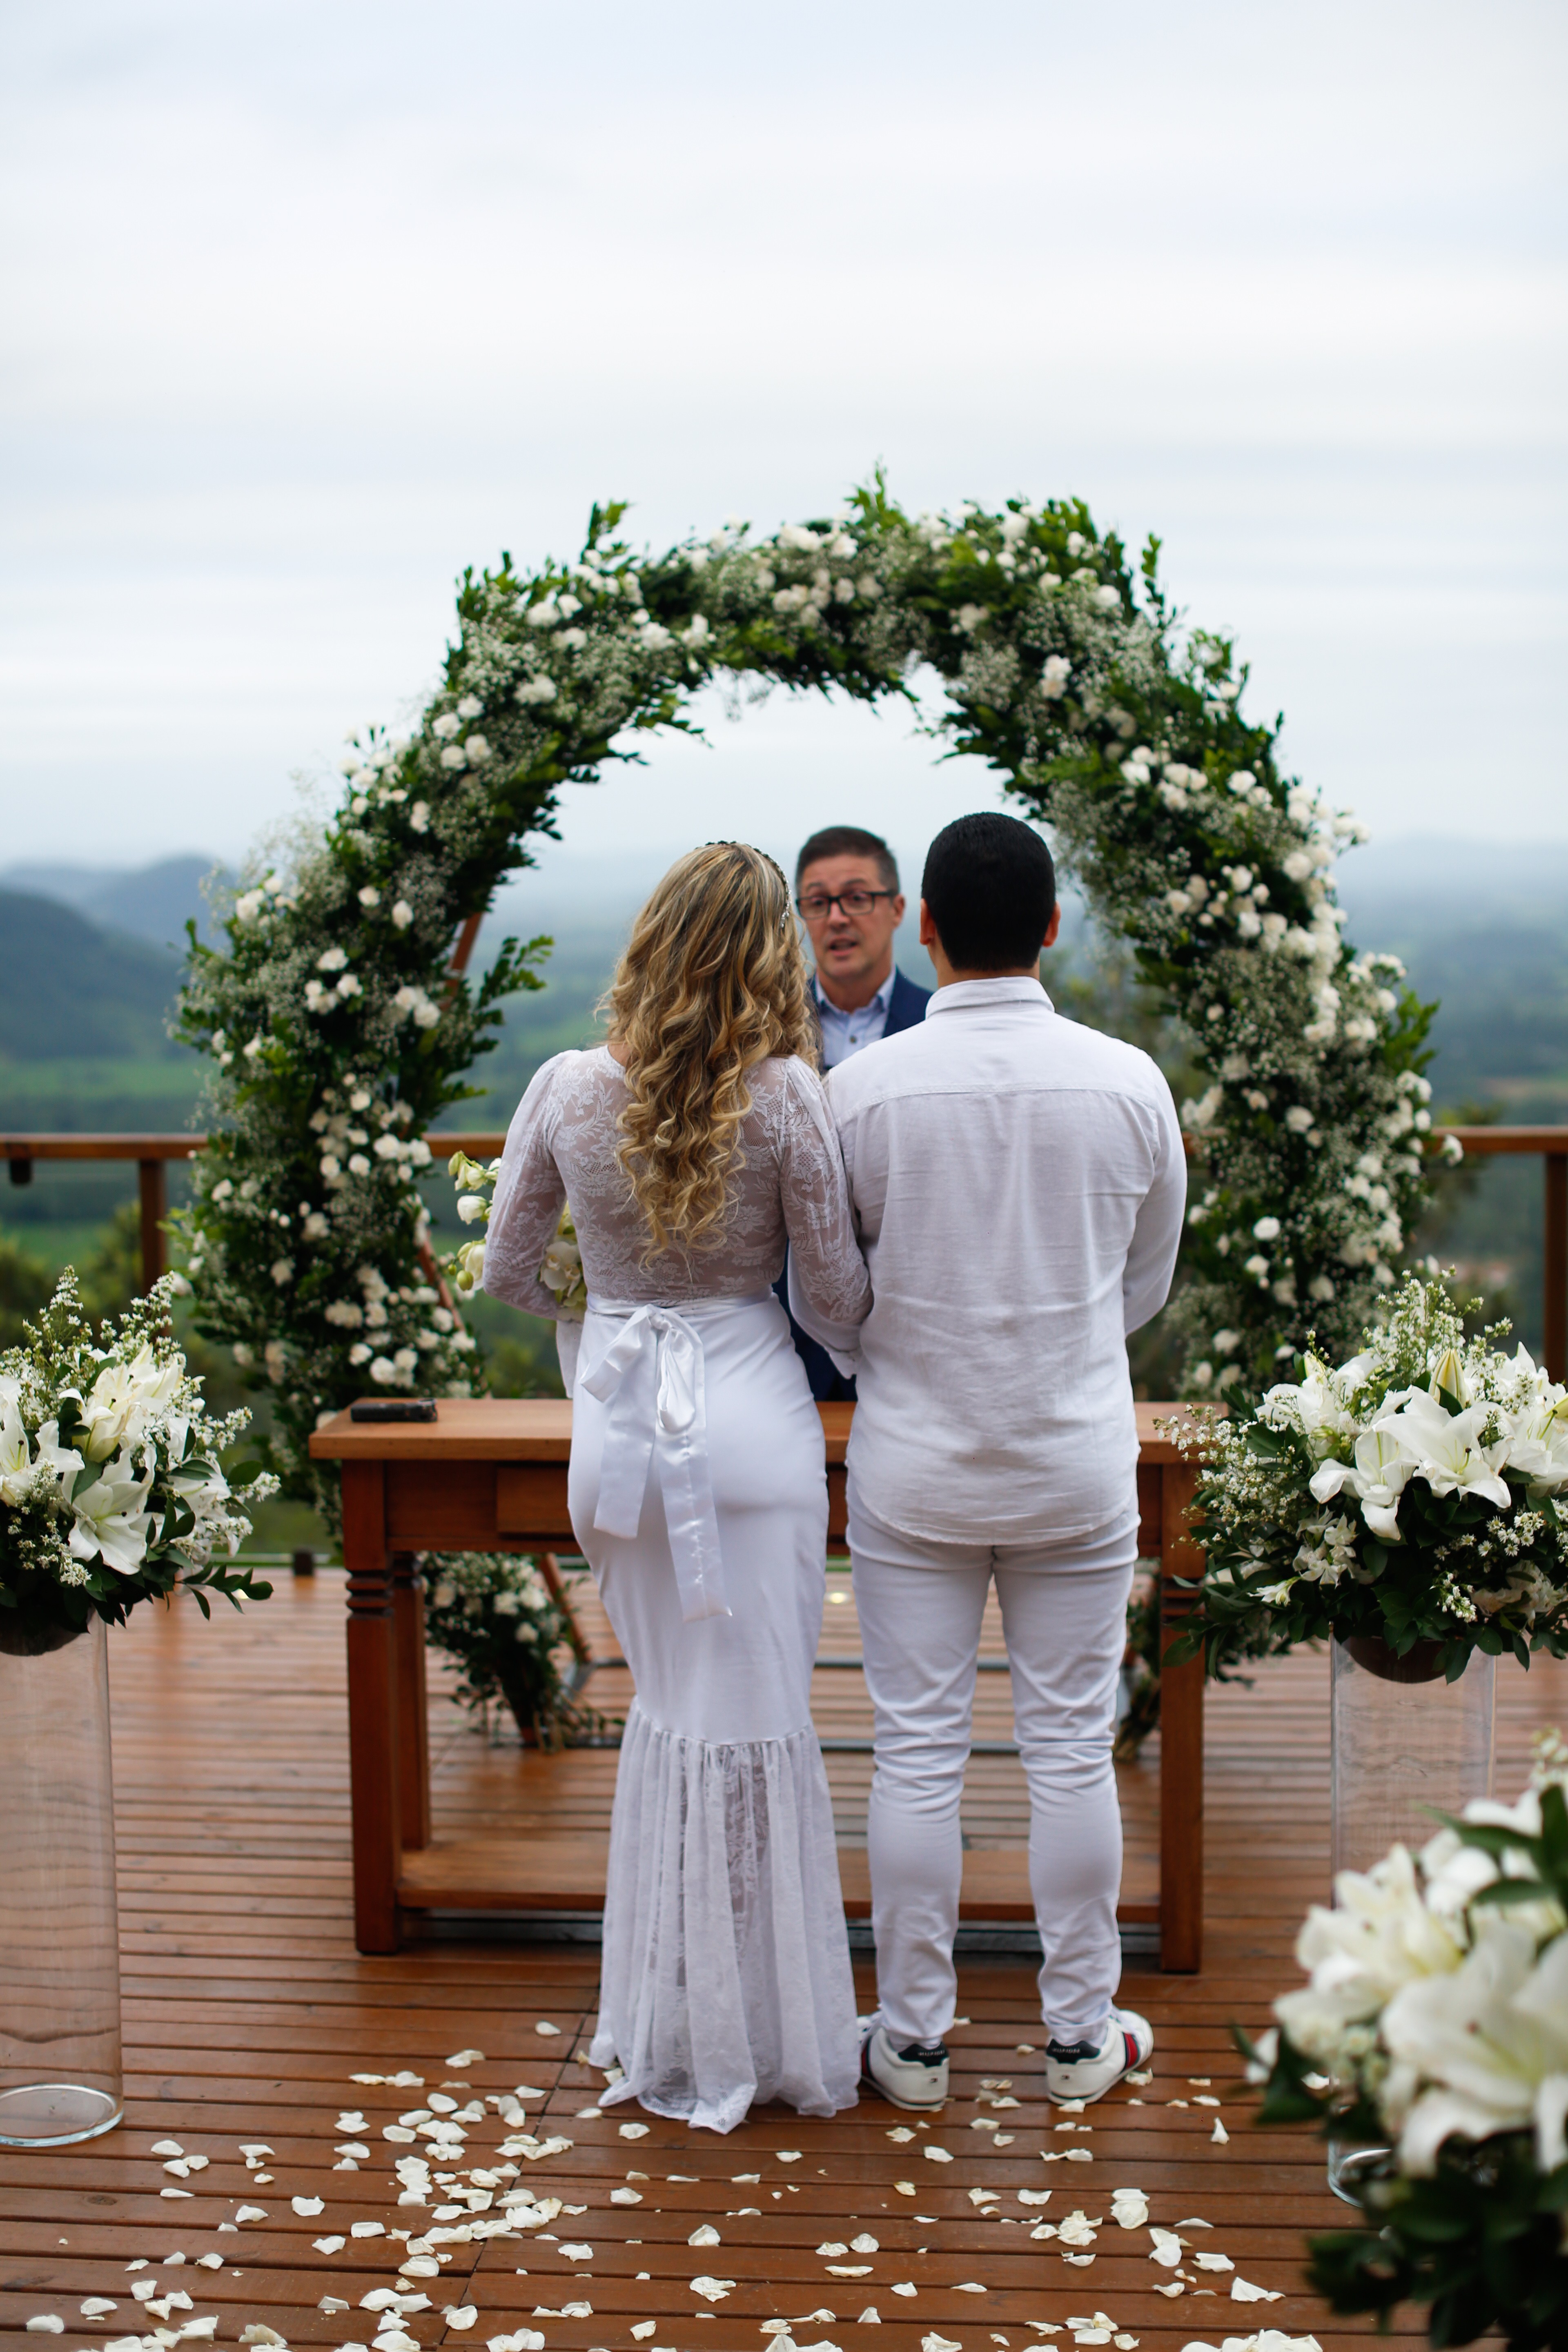 Casamento de Andressa Urach e Thiago Lopes (Foto: Bruno Dias)